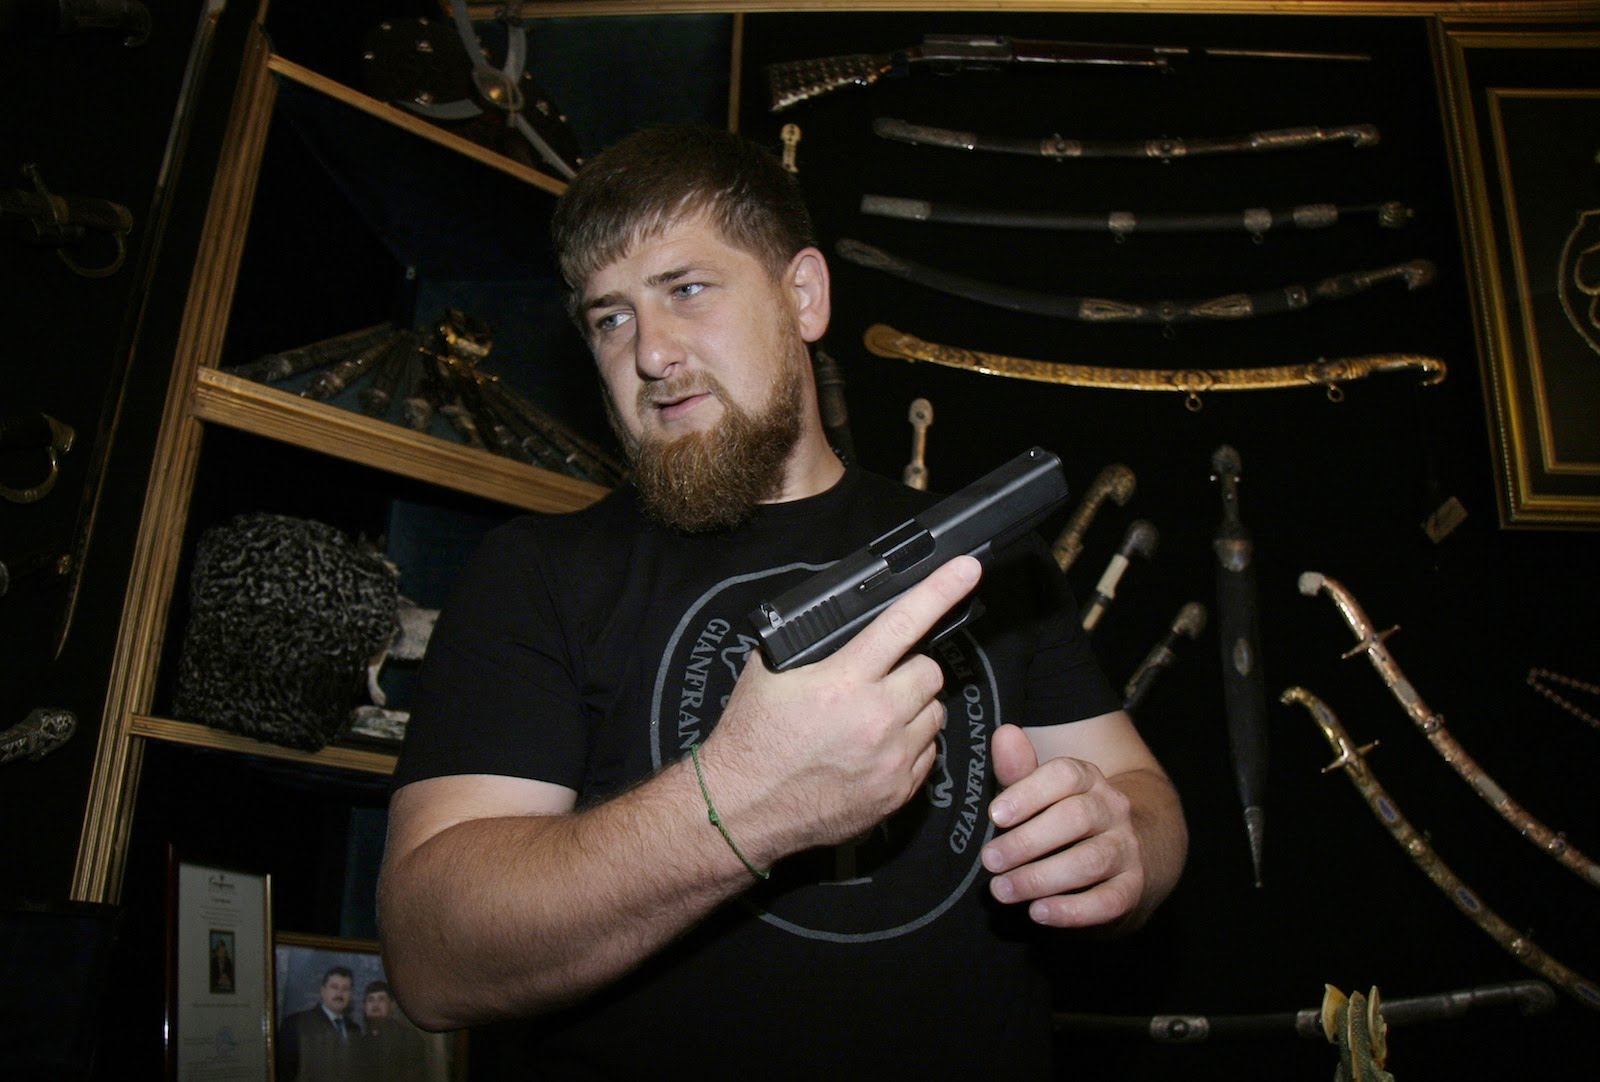 "Верующий человек никогда не посягнет на жизнь невинных людей", -  сказал Кадыров, отправивший тысячи боевиков на Донбасс убивать украинцев